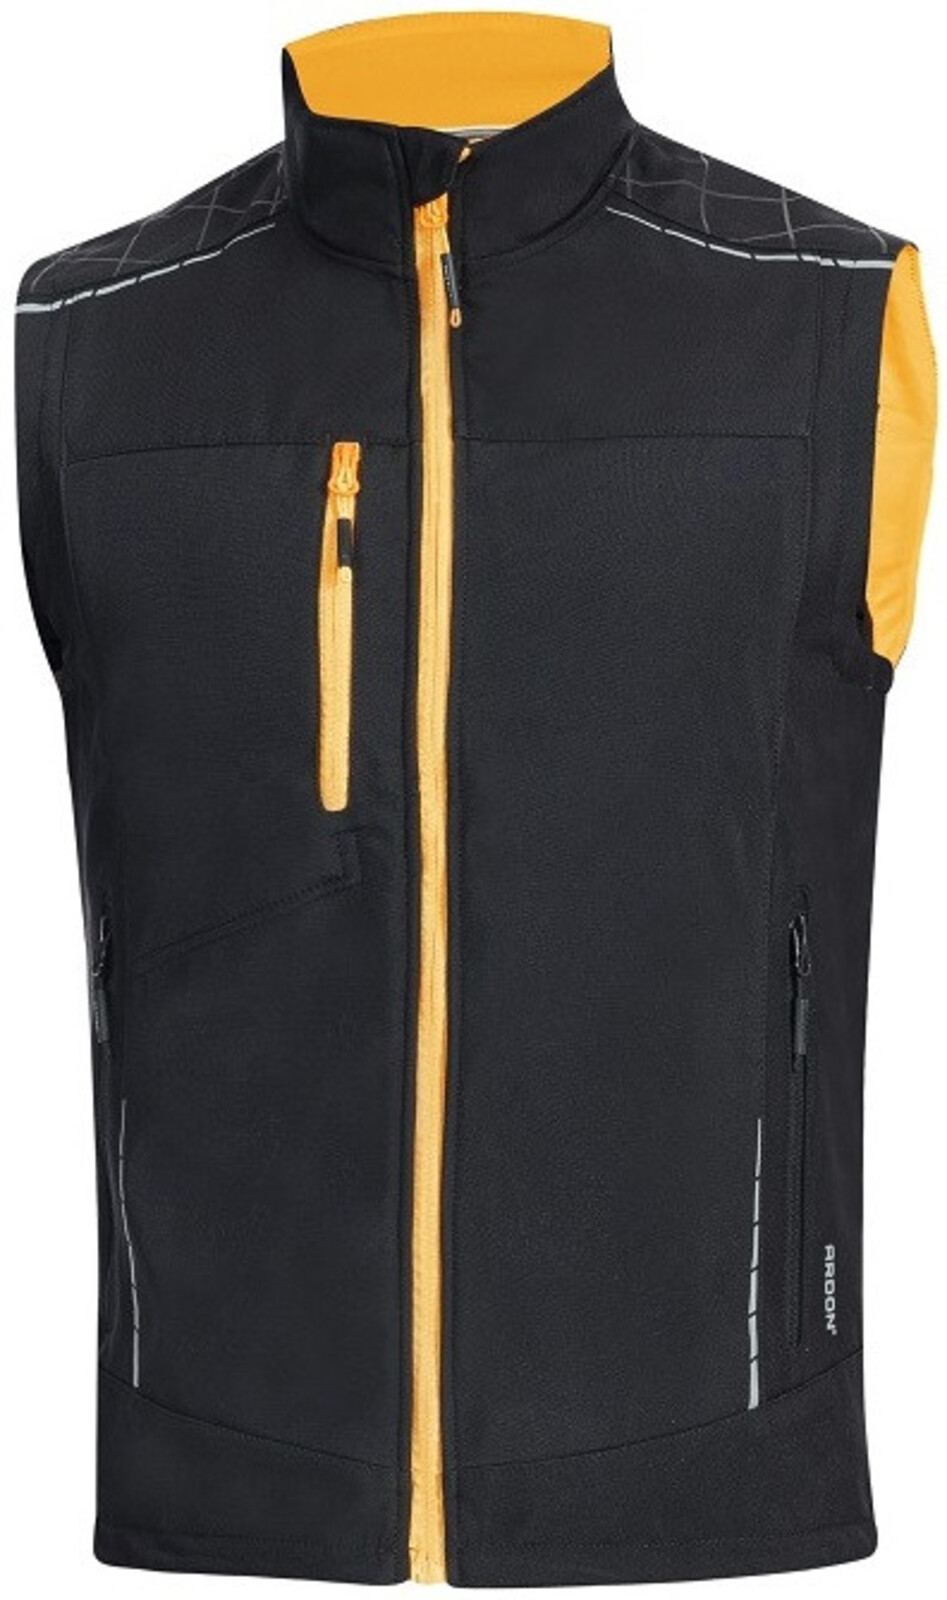 Pánska softshellová vesta Ardon Vision - veľkosť: M, farba: čierna/oranžová